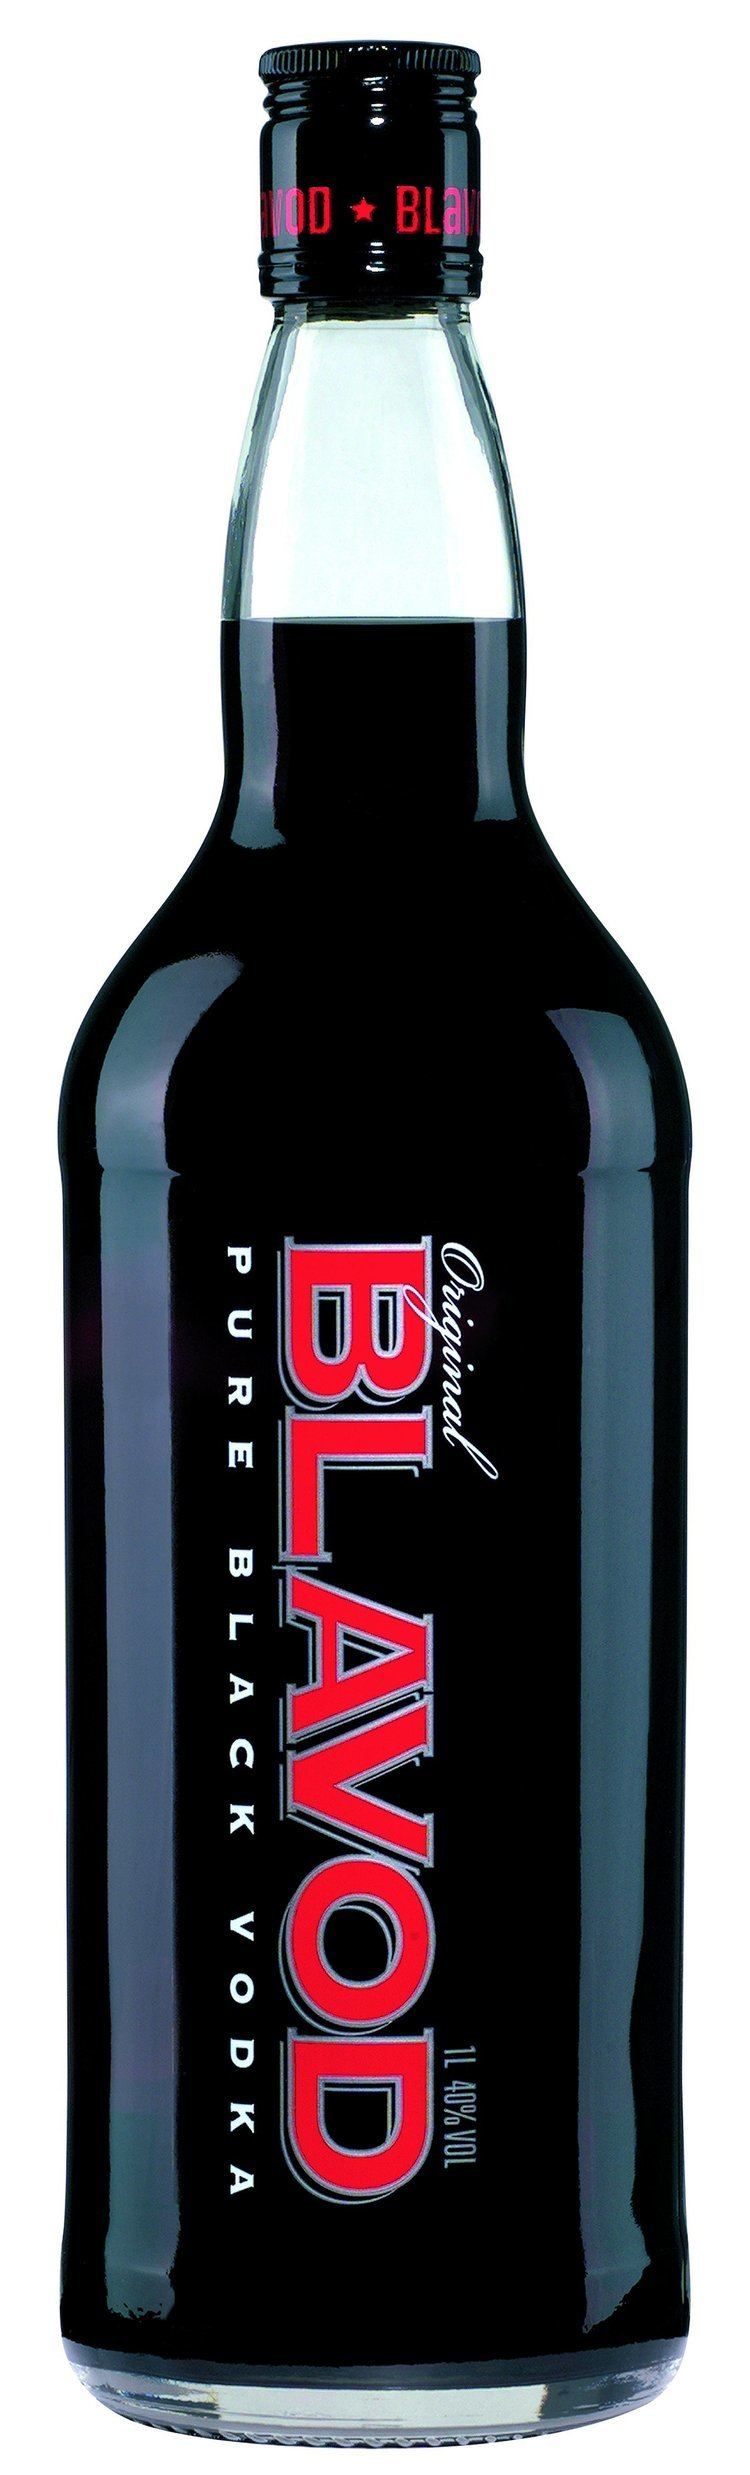 Blavod Blavod Black Vodka 1 Ltr 40